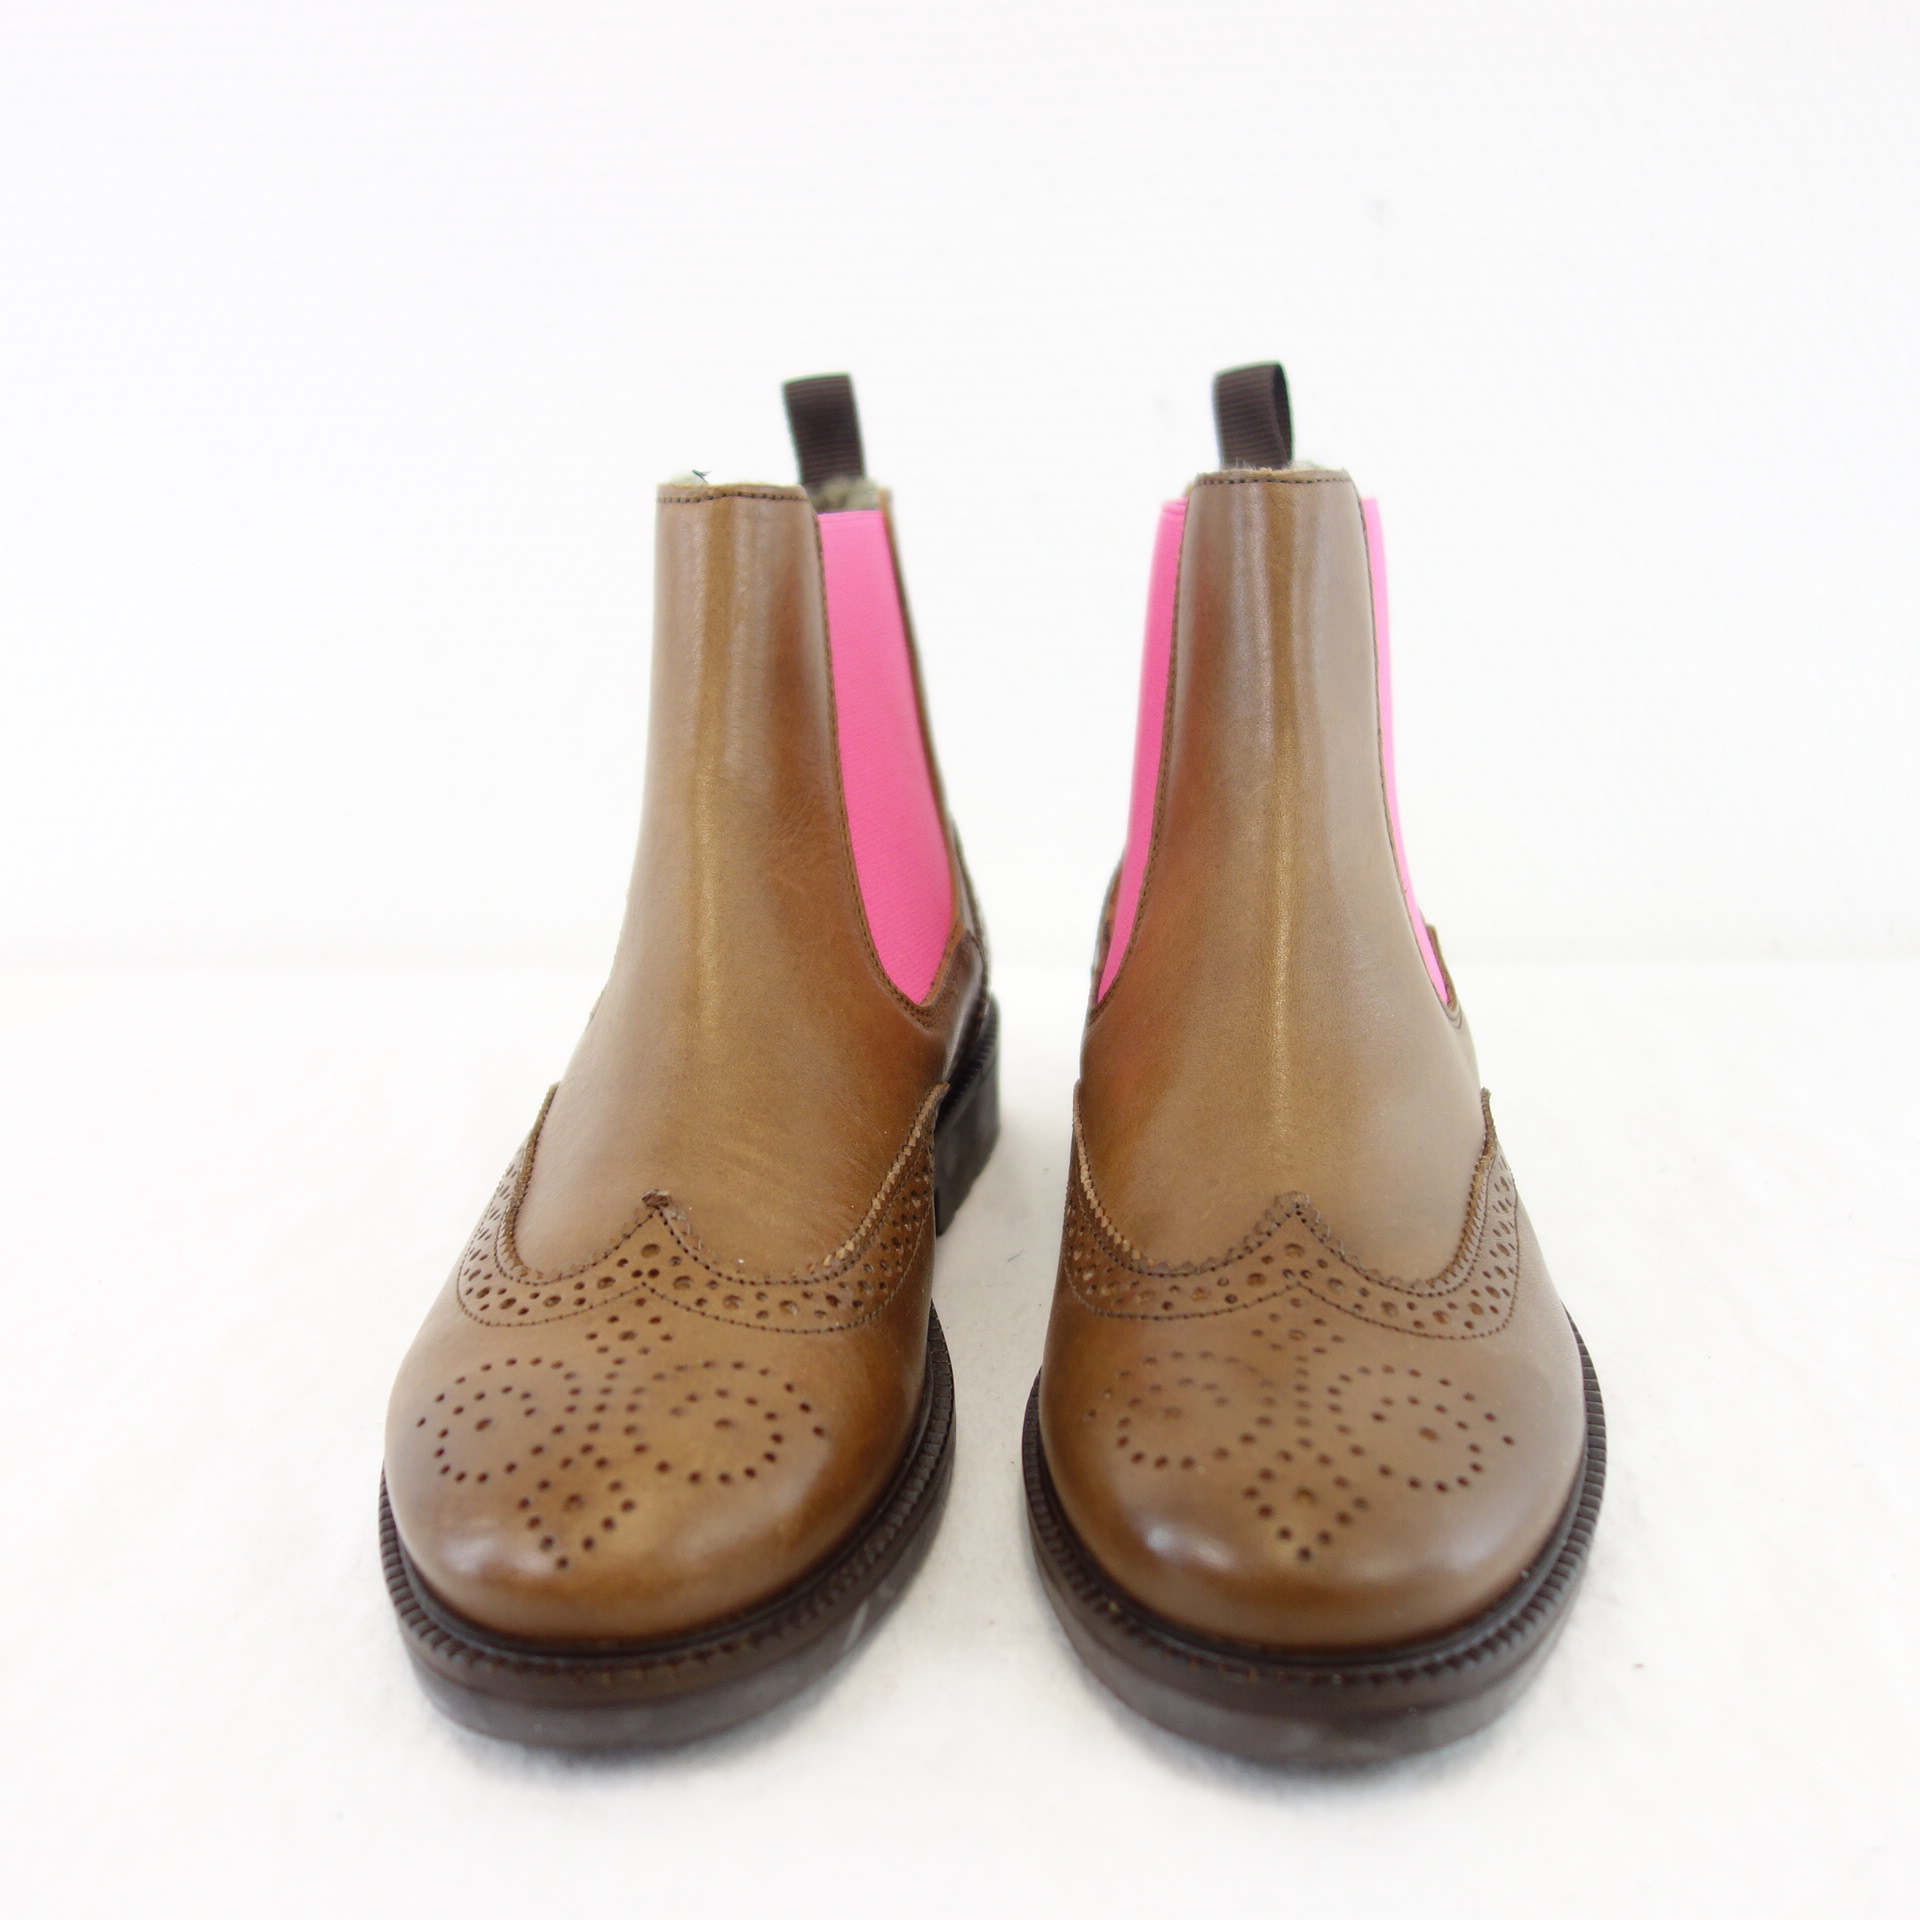 Gallucci Damen Schuhe Stiefel Stiefeletten Chelsea Boots Leder Braun Pink Gefüttert Fell Größe 36